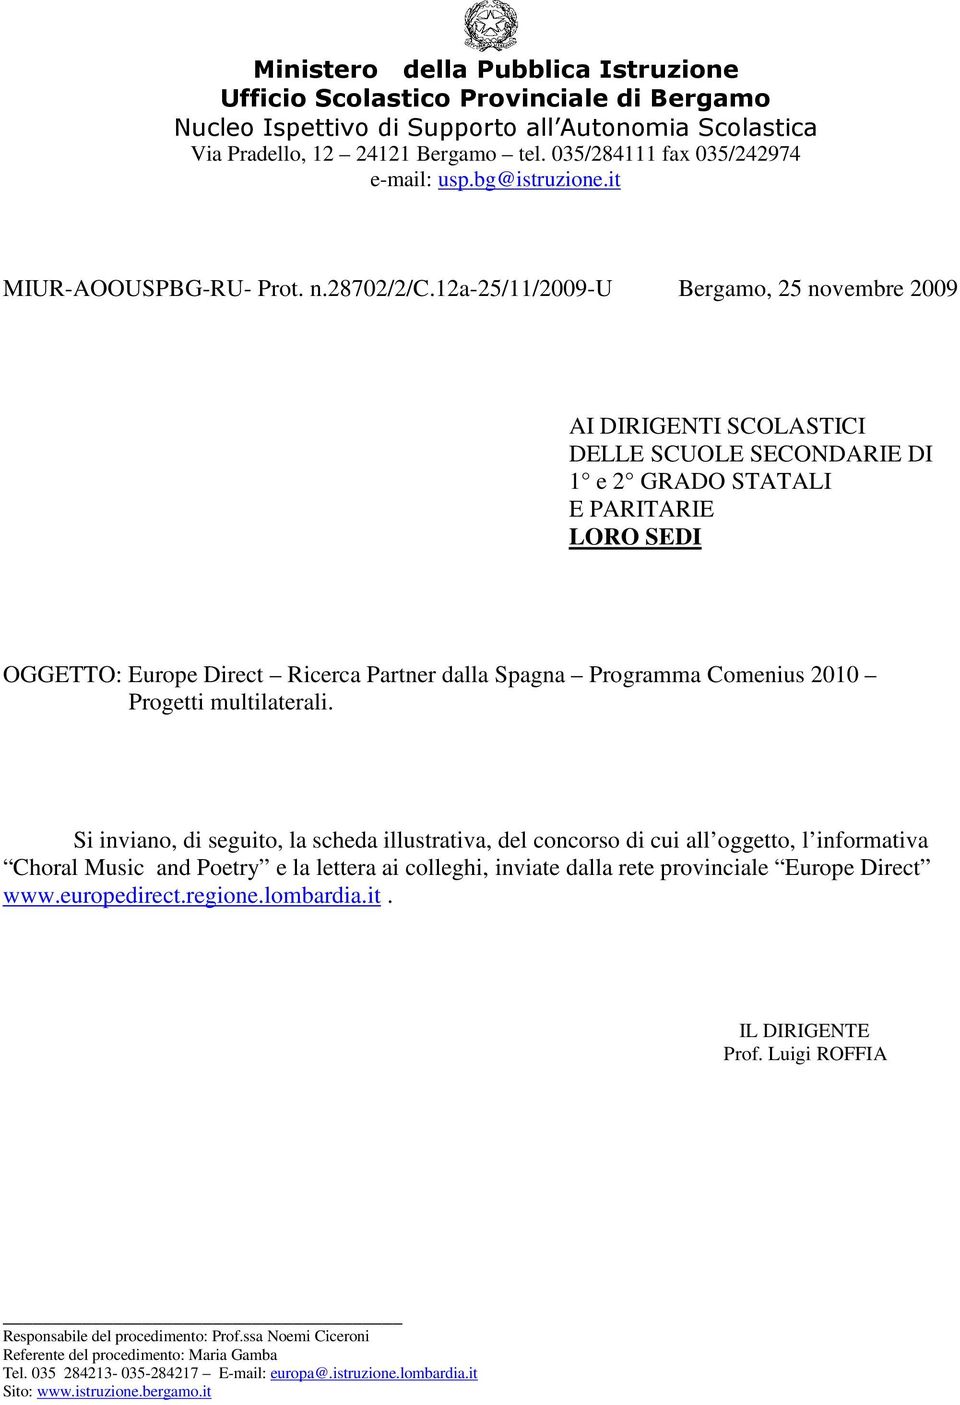 12a-25/11/2009-u Bergamo, 25 novembre 2009 AI DIRIGENTI SCOLASTICI DELLE SCUOLE SECONDARIE DI 1 e 2 GRADO STATALI E PARITARIE LORO SEDI OGGETTO: Europe Direct Ricerca Partner dalla Spagna Programma